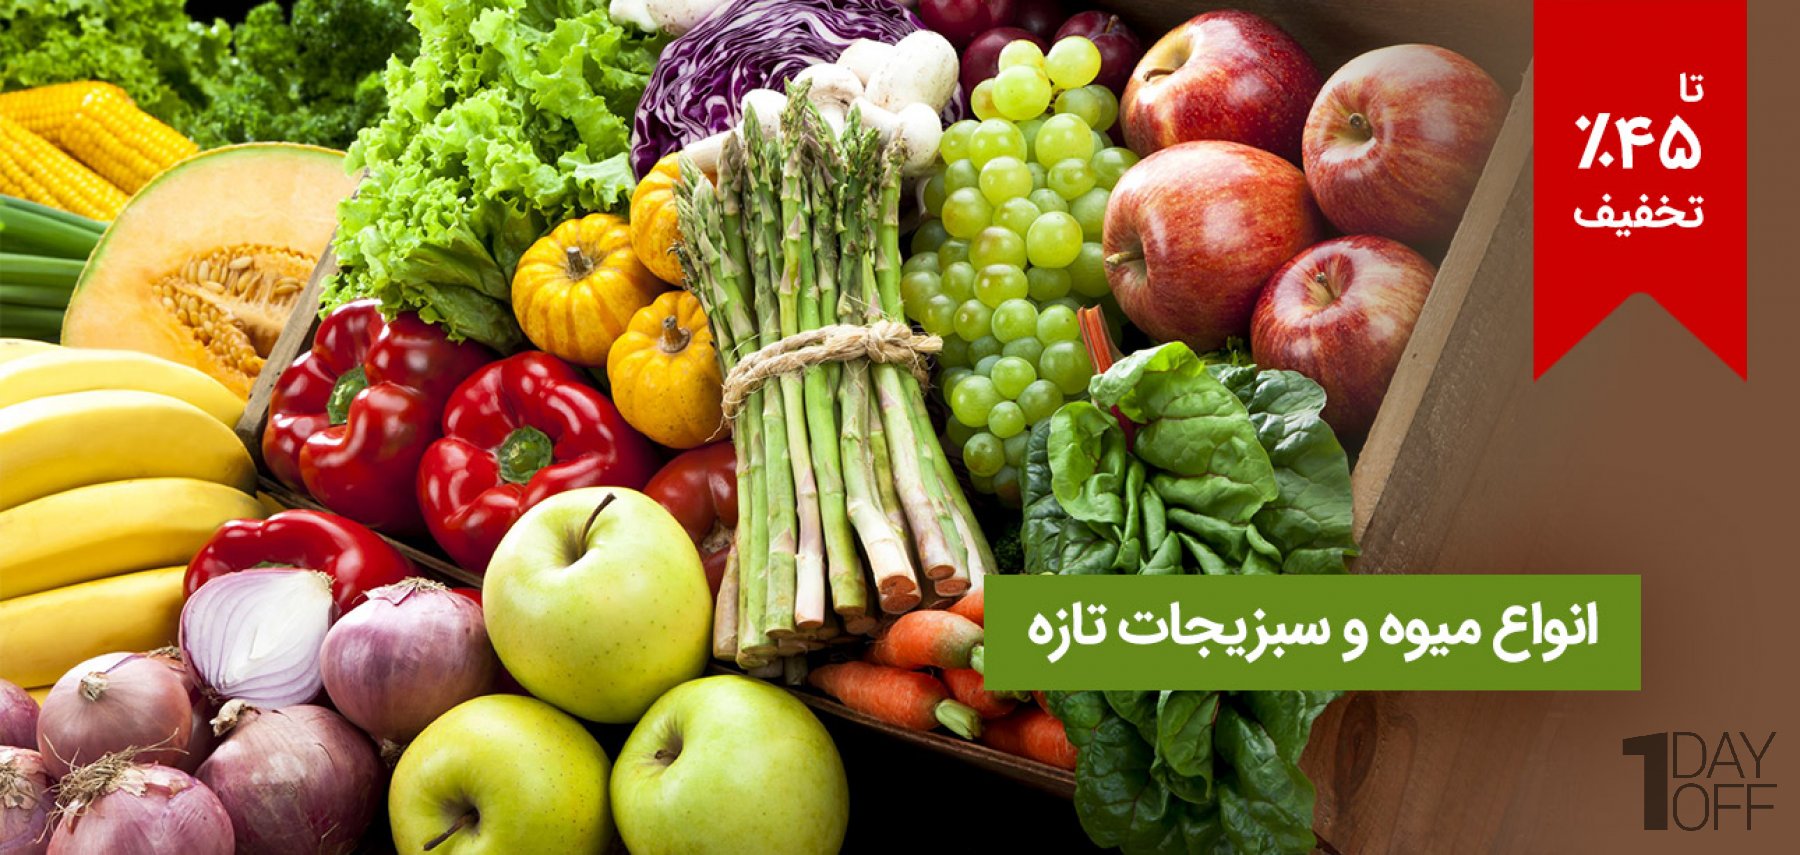 فروش ویژه انواع میوه و سبزیجات تازه 